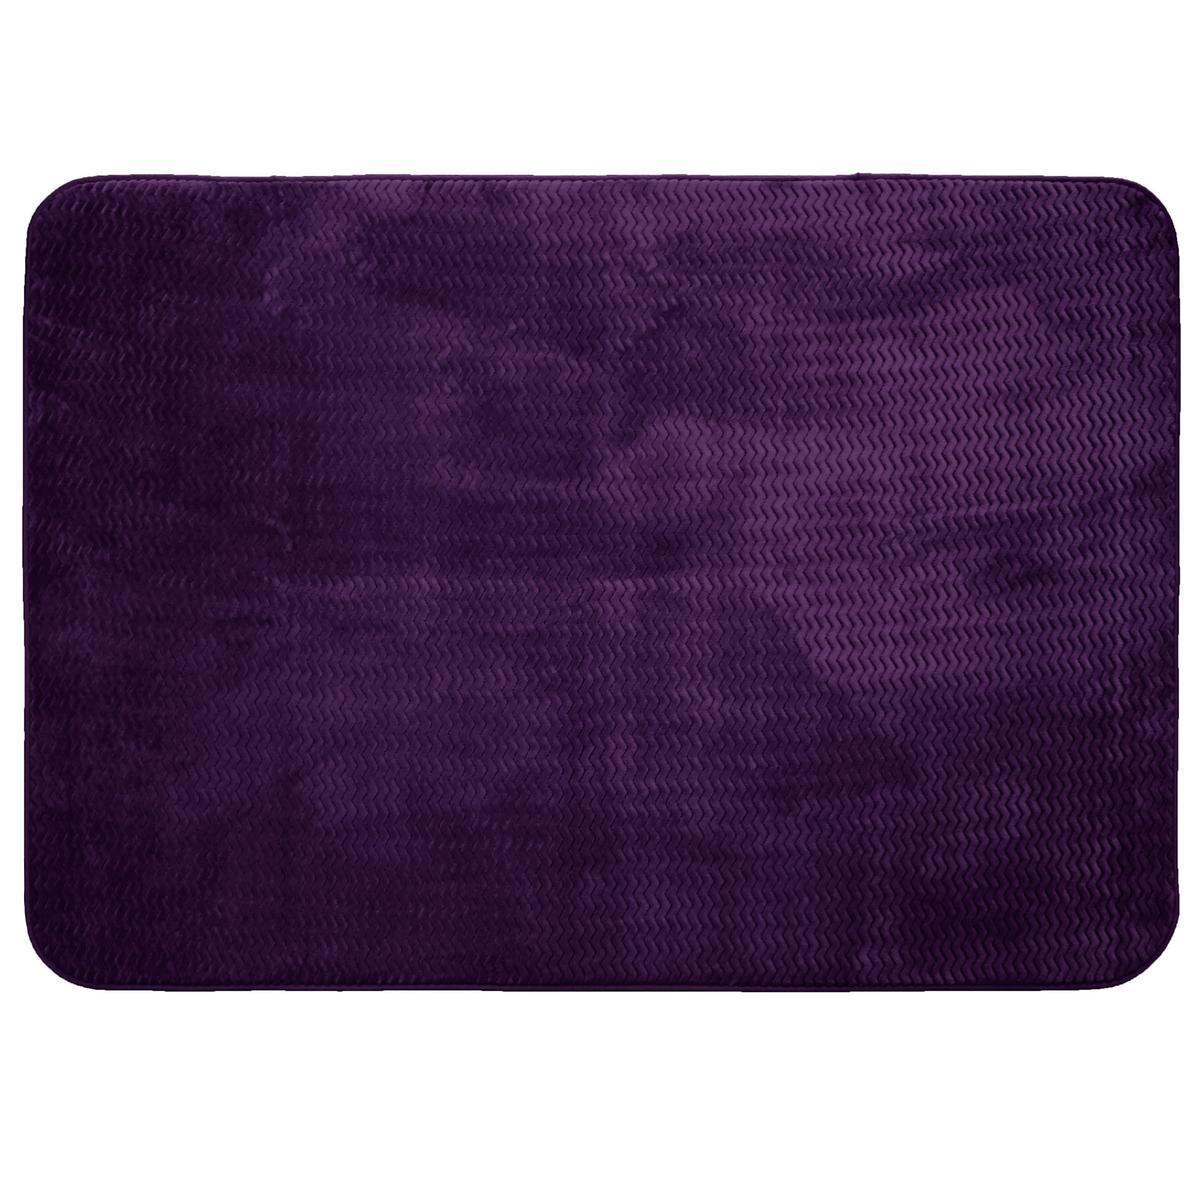 Tapis rectangulaire Zigga - 170 x 120 cm - Violet violine